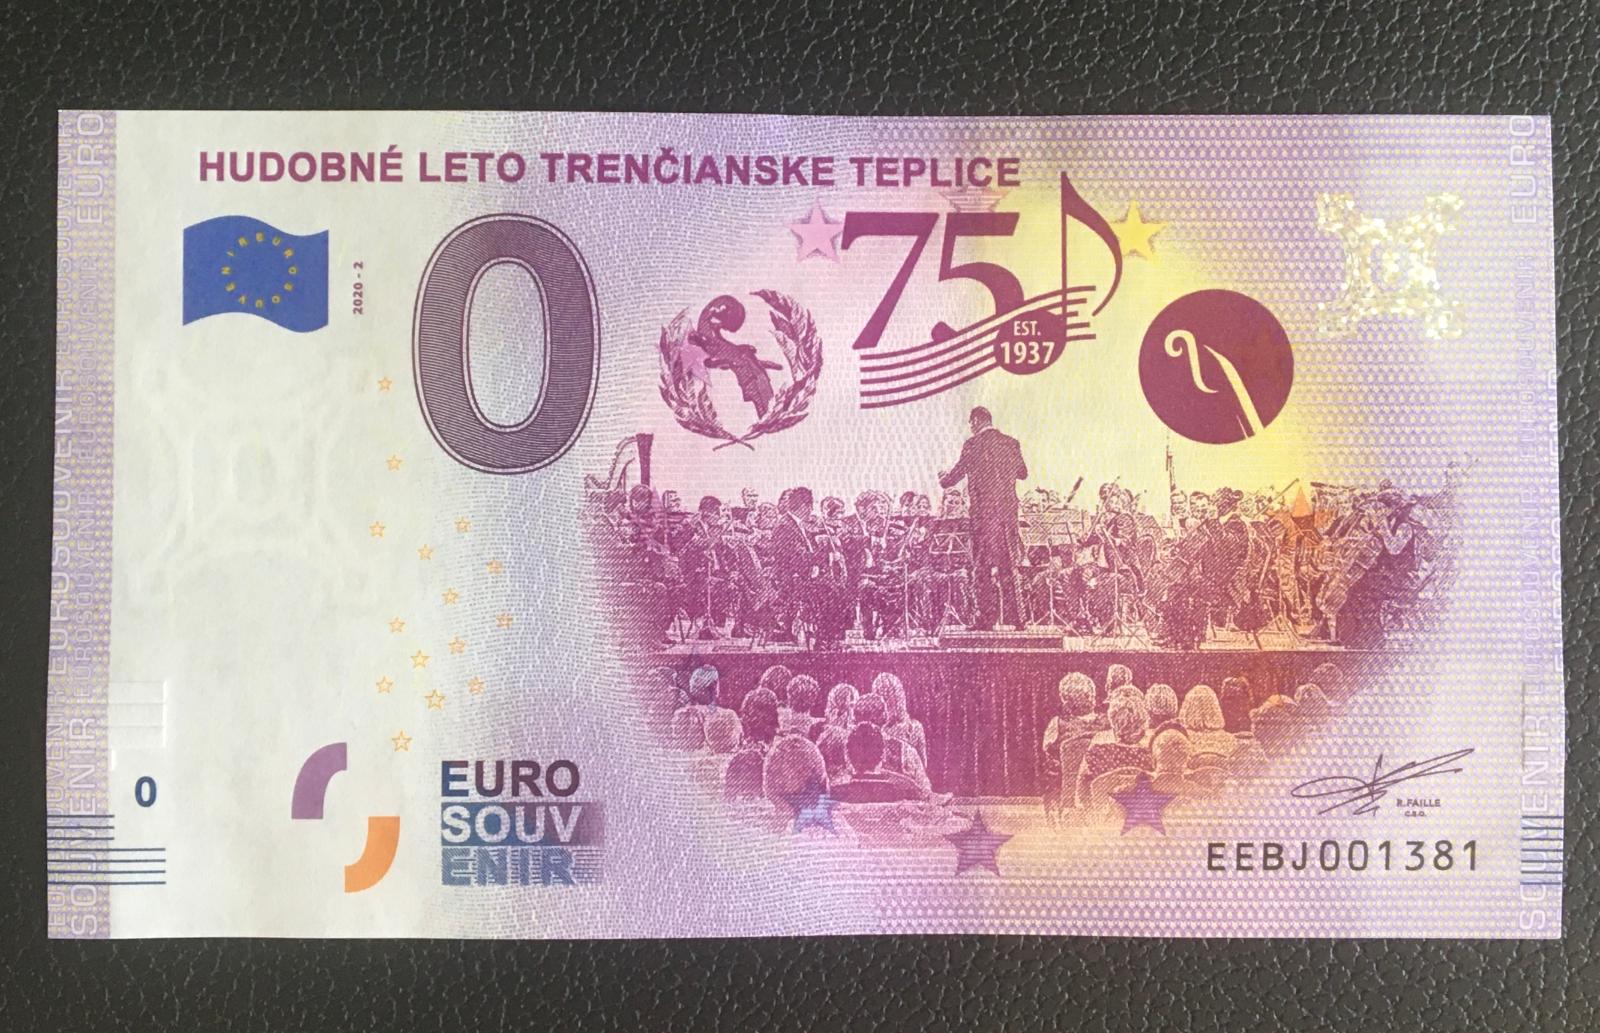 0 Euro Souvenir HUDOBNÉ LETO TRENČIANSKE TEPLICE 2020 - Zberateľstvo